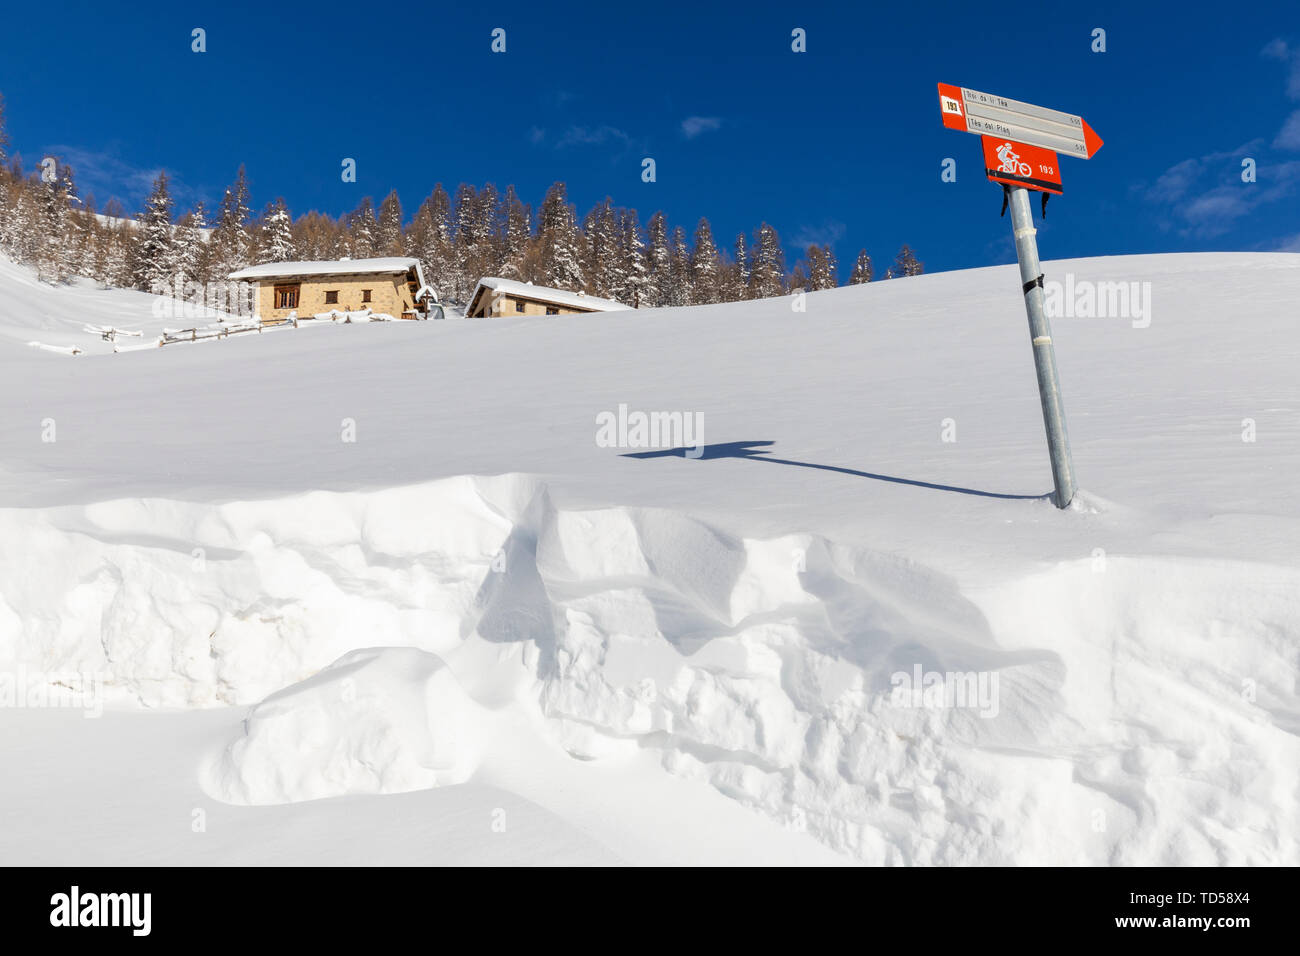 Capanne tradizionali con segnale di trekking in inverno, Livigno Valtellina, Lombardia, Italia, Europa Foto Stock